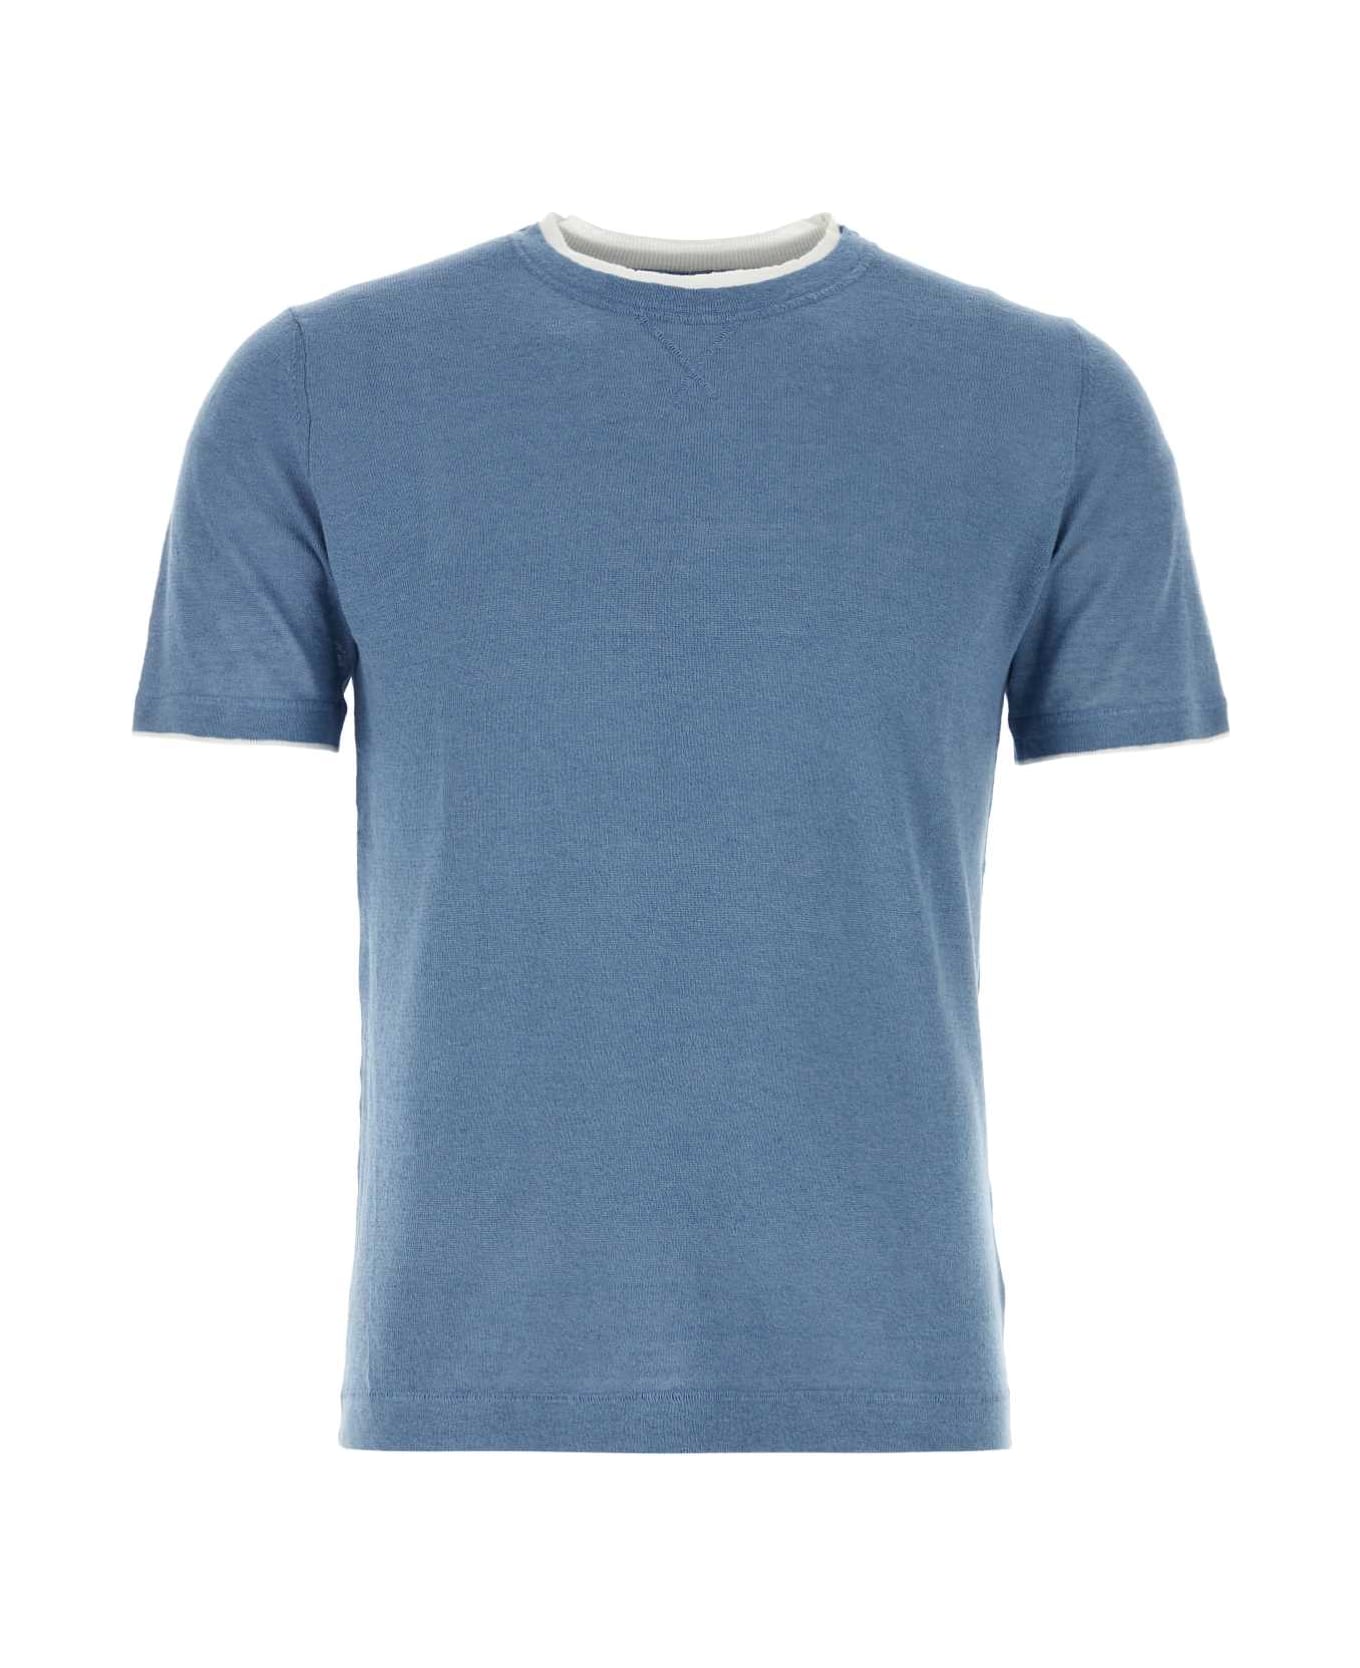 Fedeli Air Force Blue Linen Blend Fox T-shirt - CARTAZUCCHERO シャツ